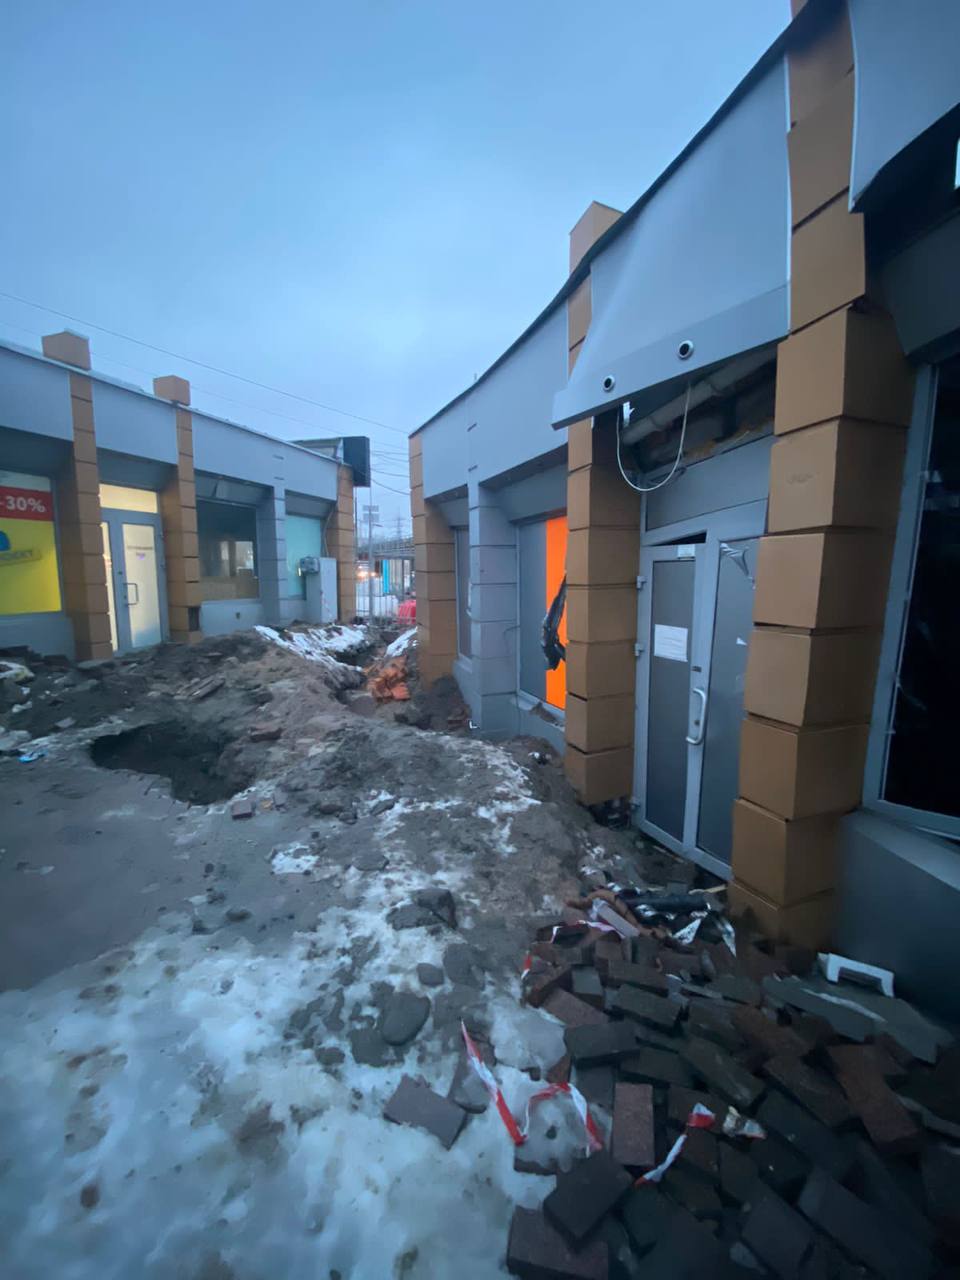 Над станцией метро ”Демеевская” проседает грунт, разрушая торговые павильоны: фото — фото 1